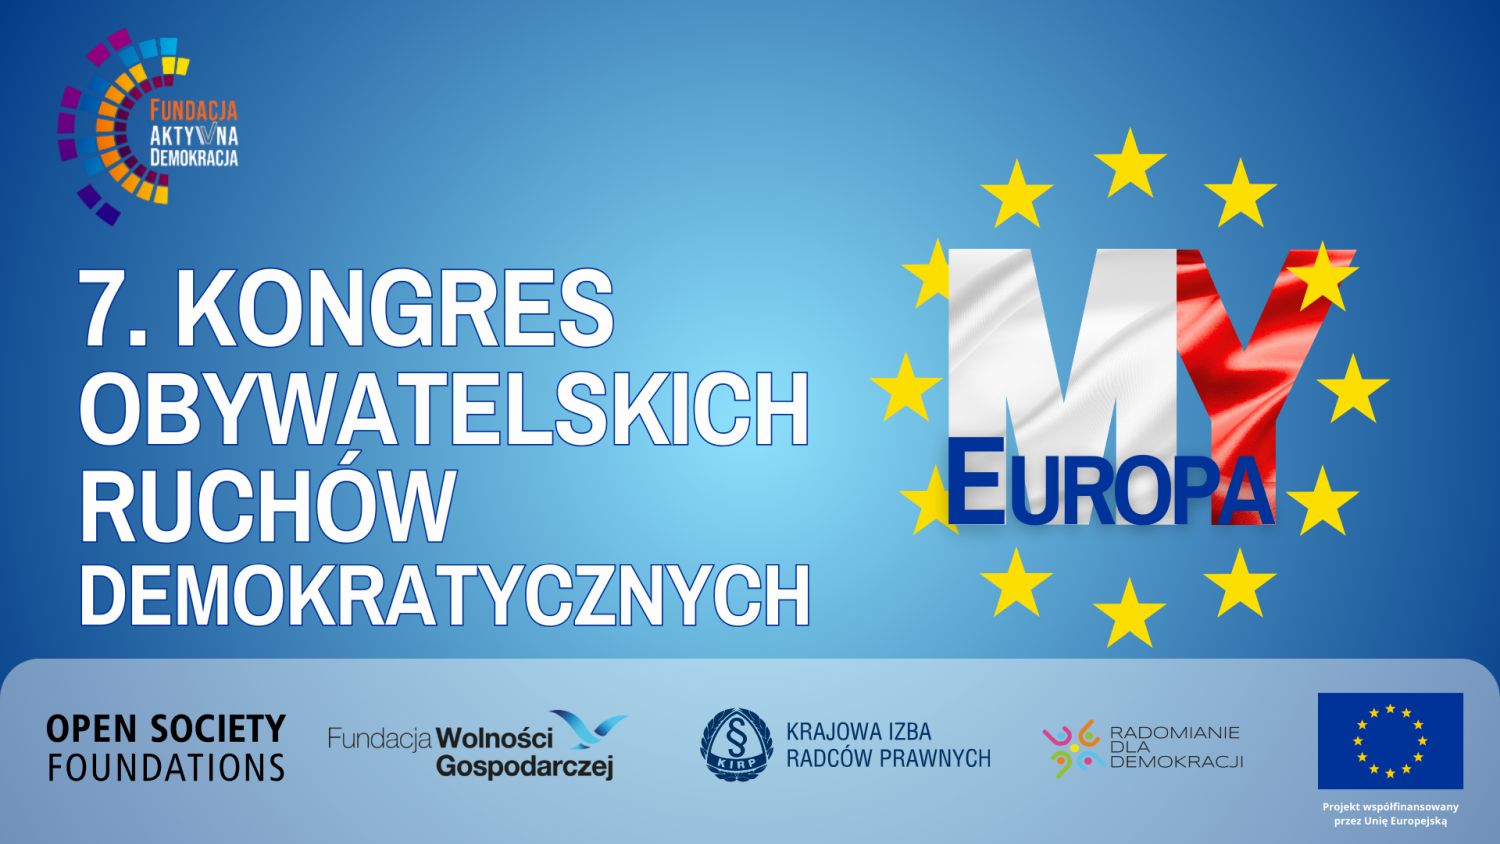 7. Kongres Obywatelskich Ruchów Demokratycznych  - MY EUROPA